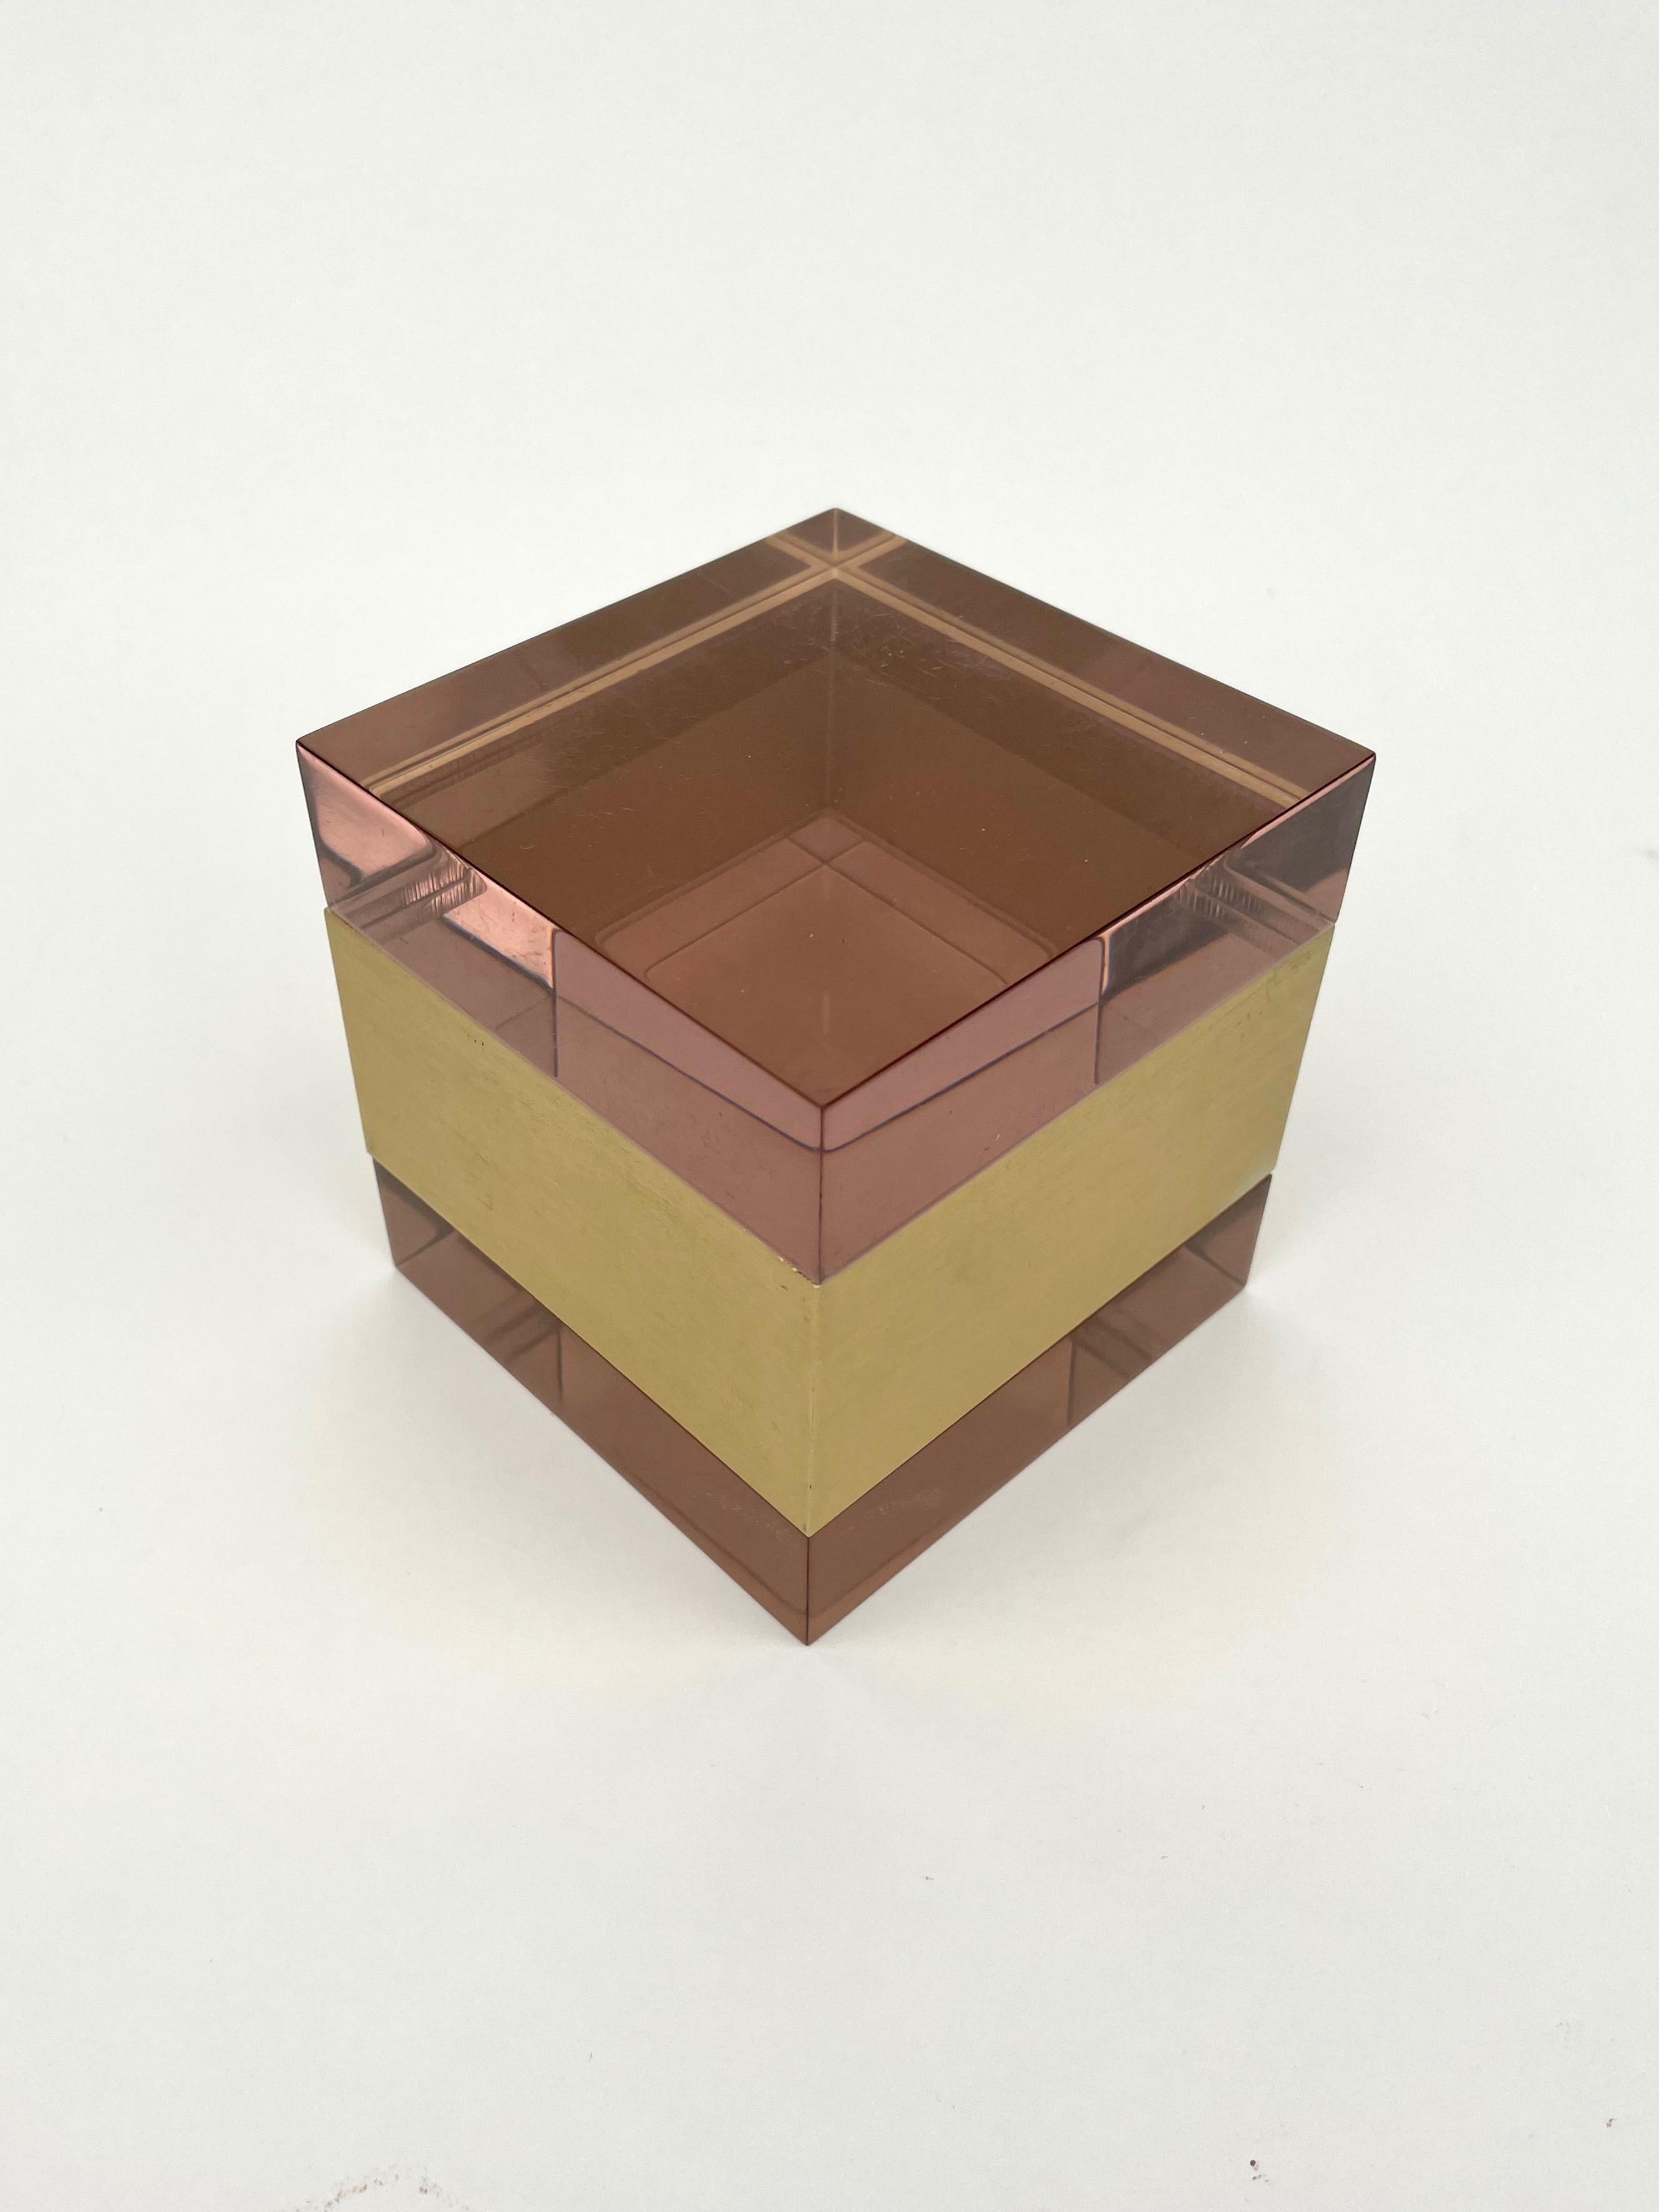 Diese Auktion ist für eine lila Würfel Lucite Box mit Gold Farbe Metall in der Mitte von italienischen Designer Alessandro Albrizzi. Insgesamt ist das Stück wunderschön, mit einer wunderbaren Farbgebung und einer Eleganz, die heutzutage nur noch